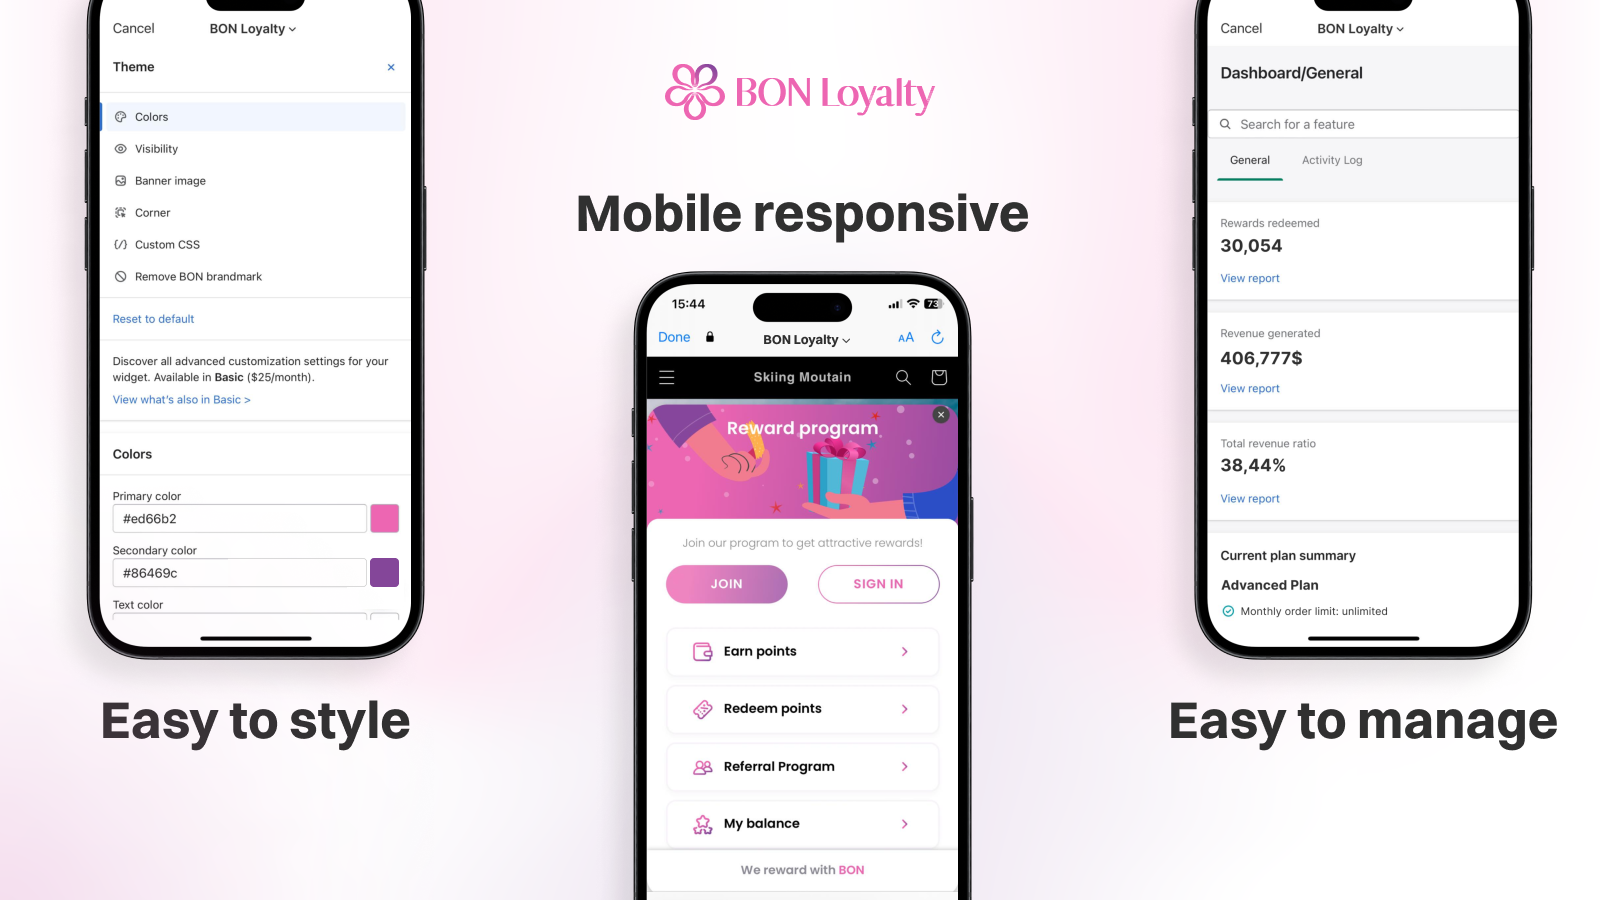 BON Loyalty tilbyder mobilresponsiv brugergrænseflade